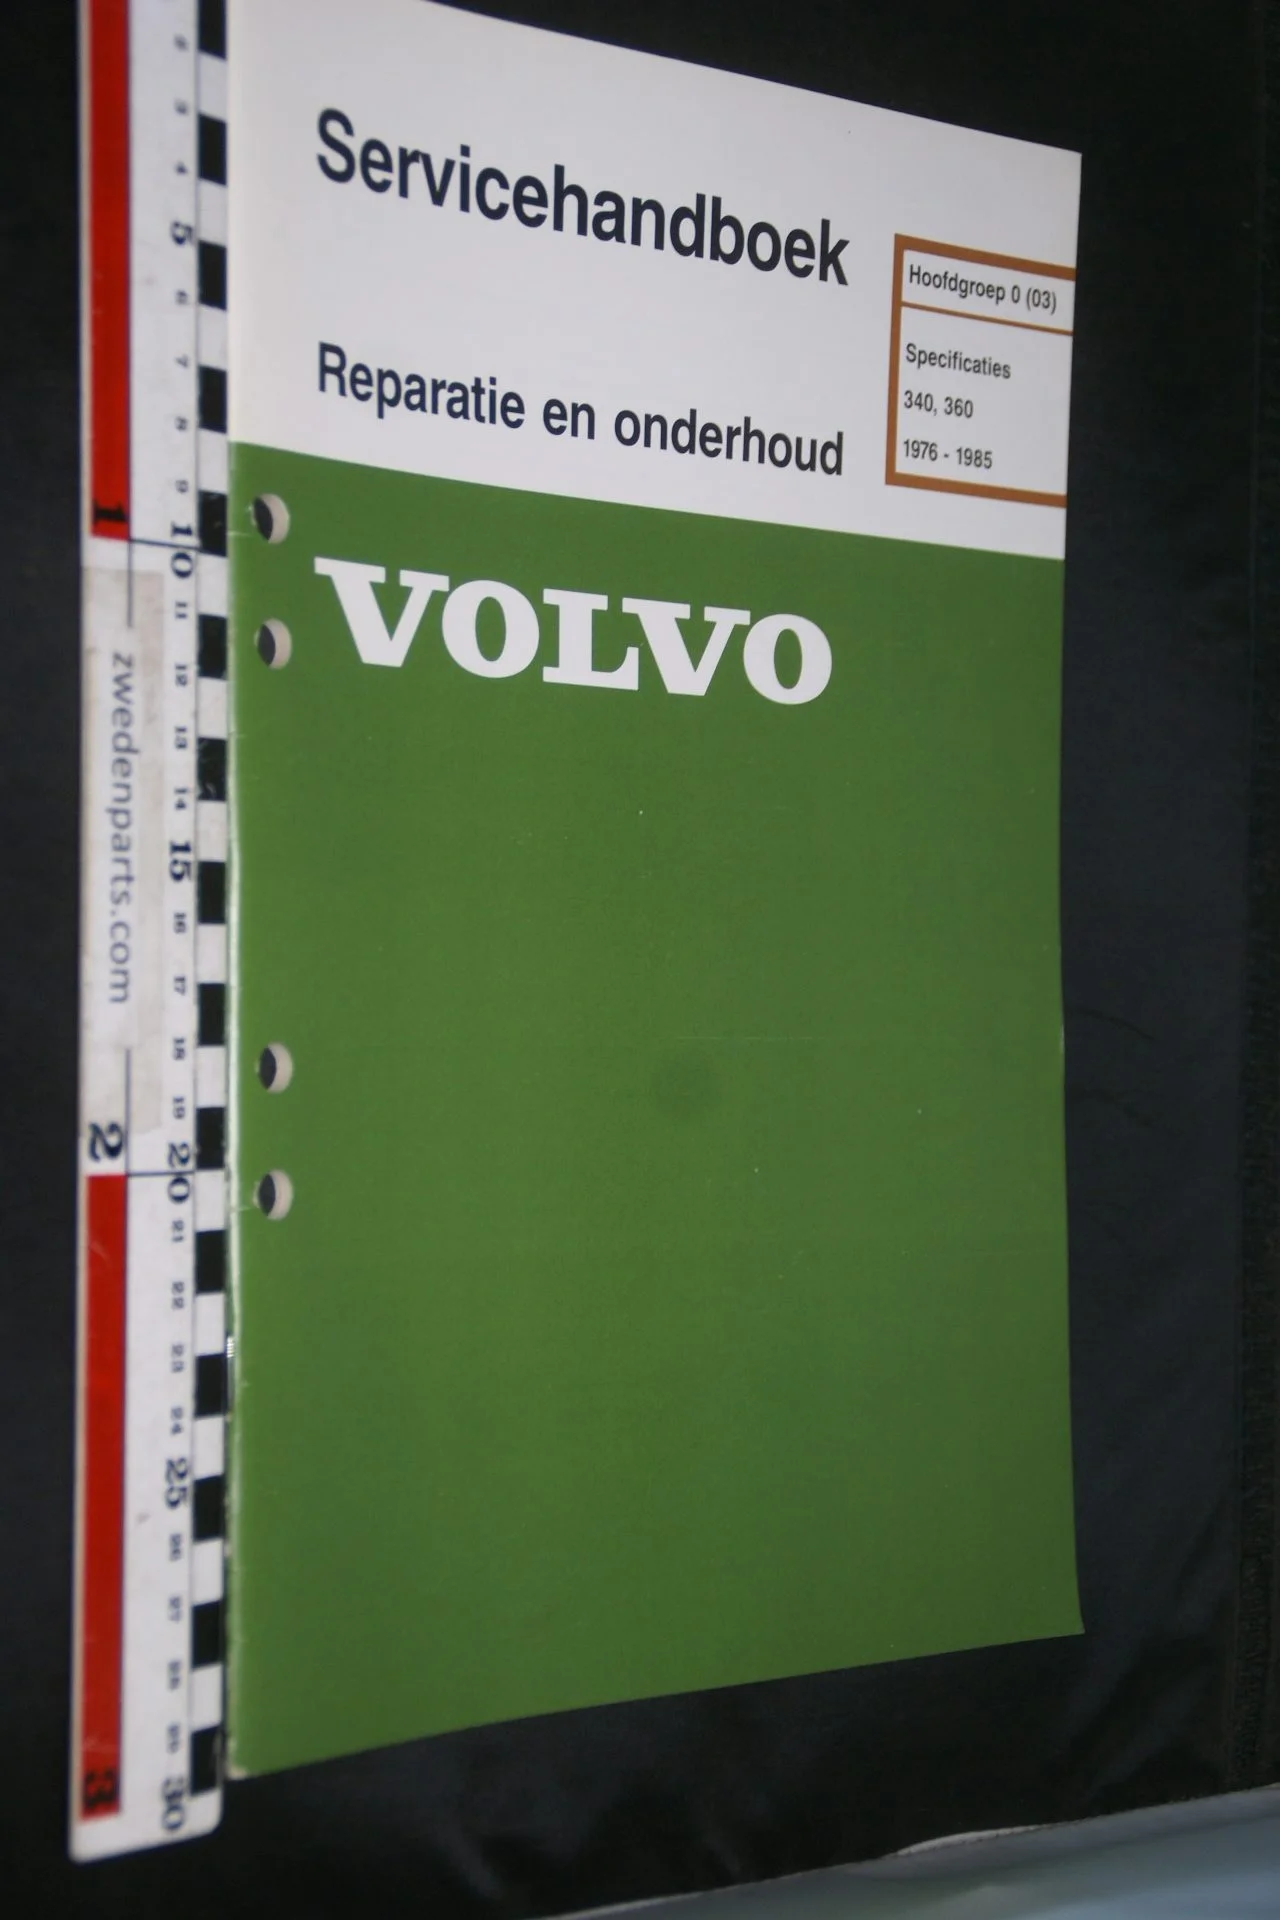 DSC07278 1984 origineel Volvo 340 360 servicehandboek  0(03) specificaties 1 van 700 TP 35028-6